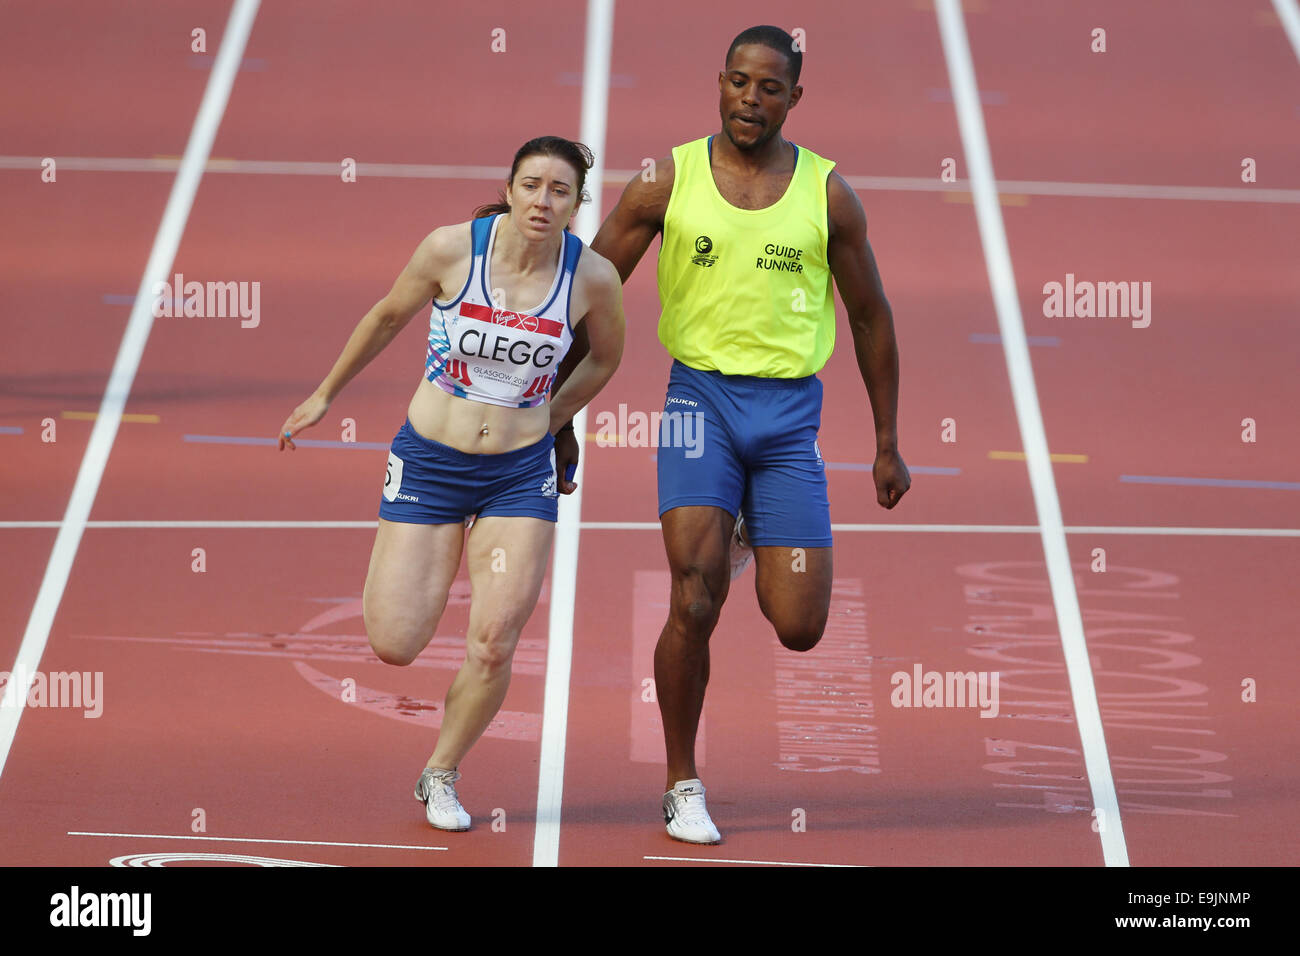 Libby Clegg et Mikail HUGGINS (Guide) de l'Angleterre dans l'athlétisme dans les chaleurs de la Womens Para-Sport 100m T11 / T12 de la race. Banque D'Images